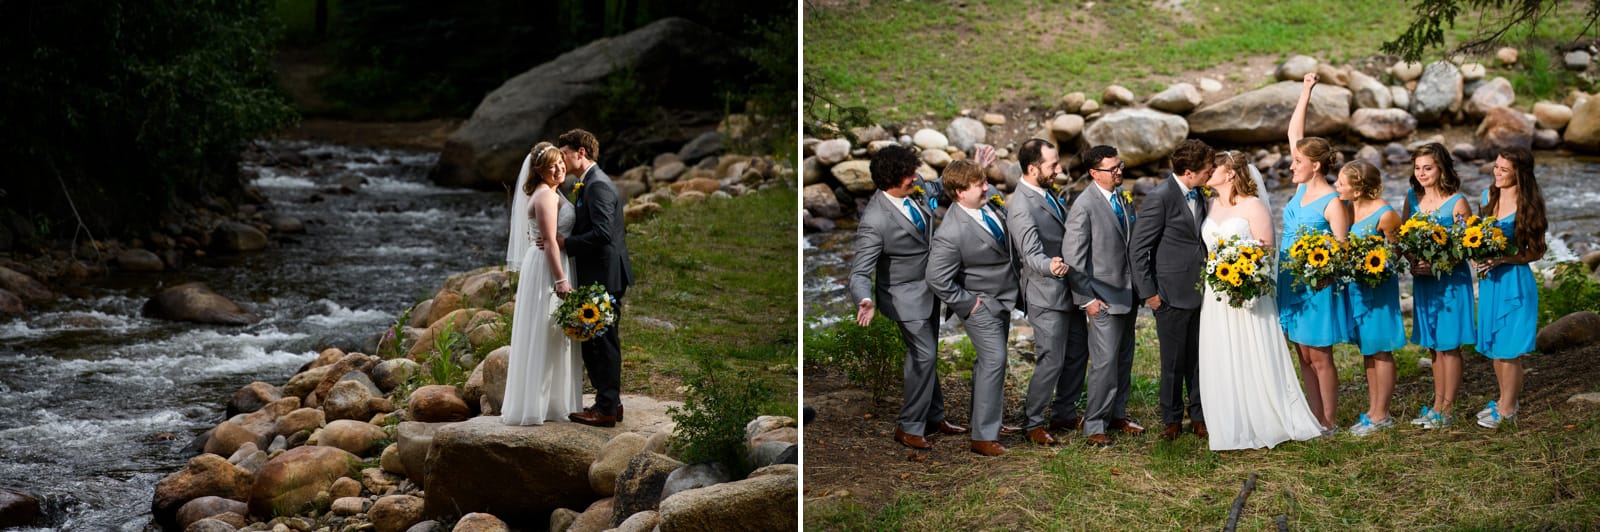 estes park condos wedding photos